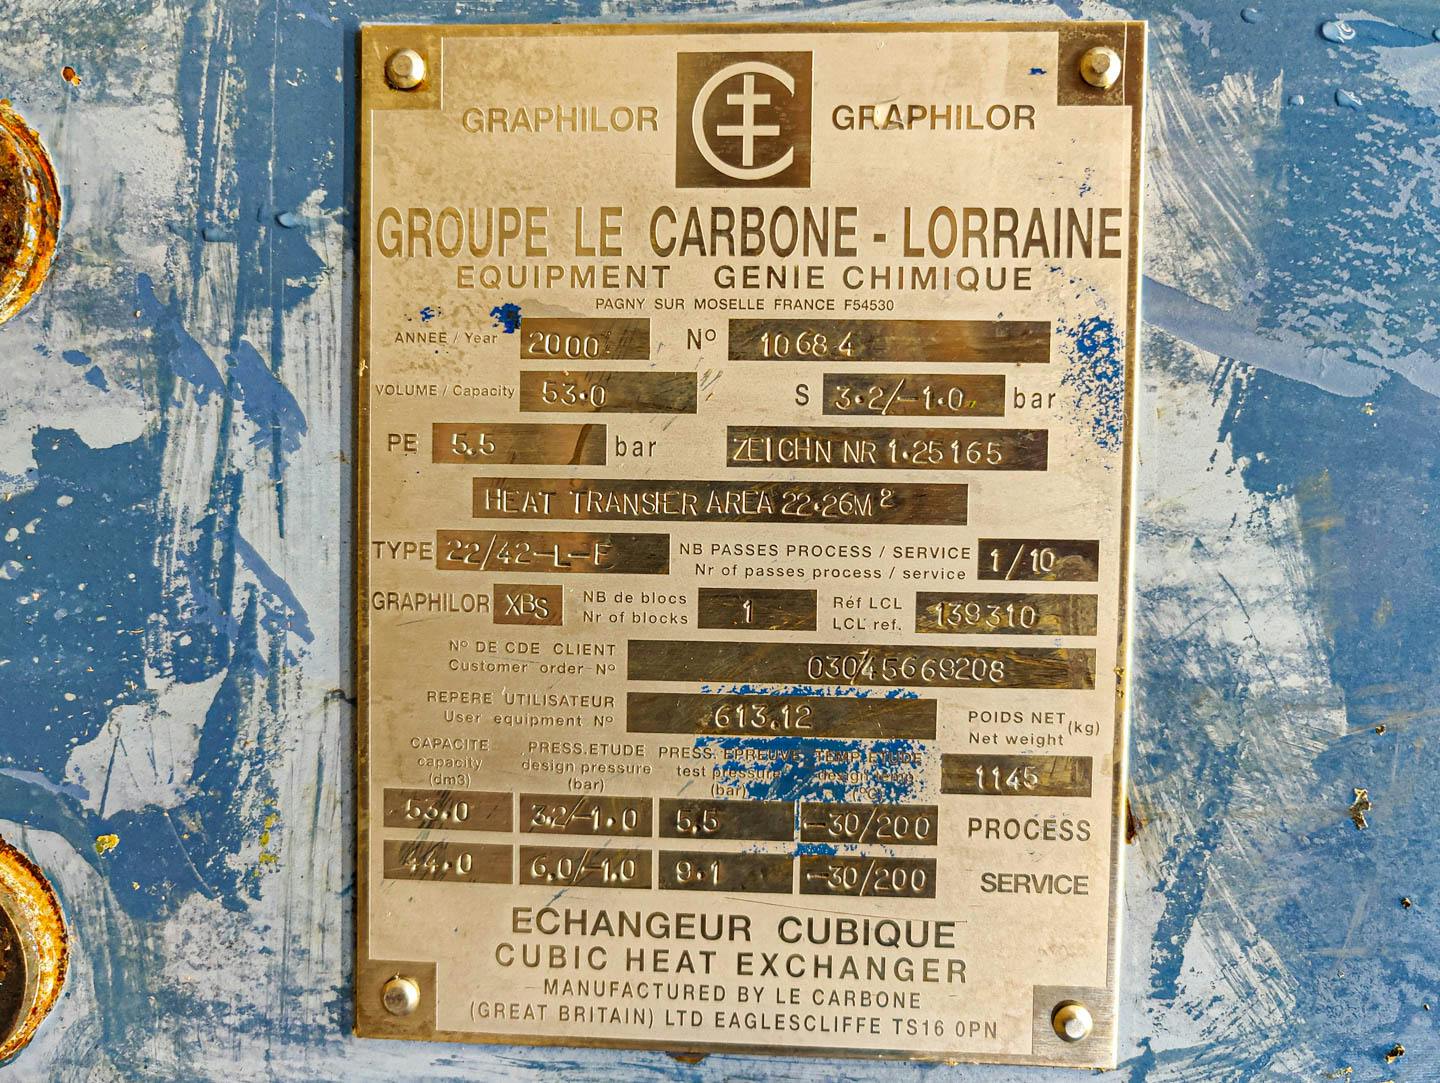 Le Carbone-Lorraine NK22/42-L-F - Scambiatore di calore a fascio tubiero - image 8